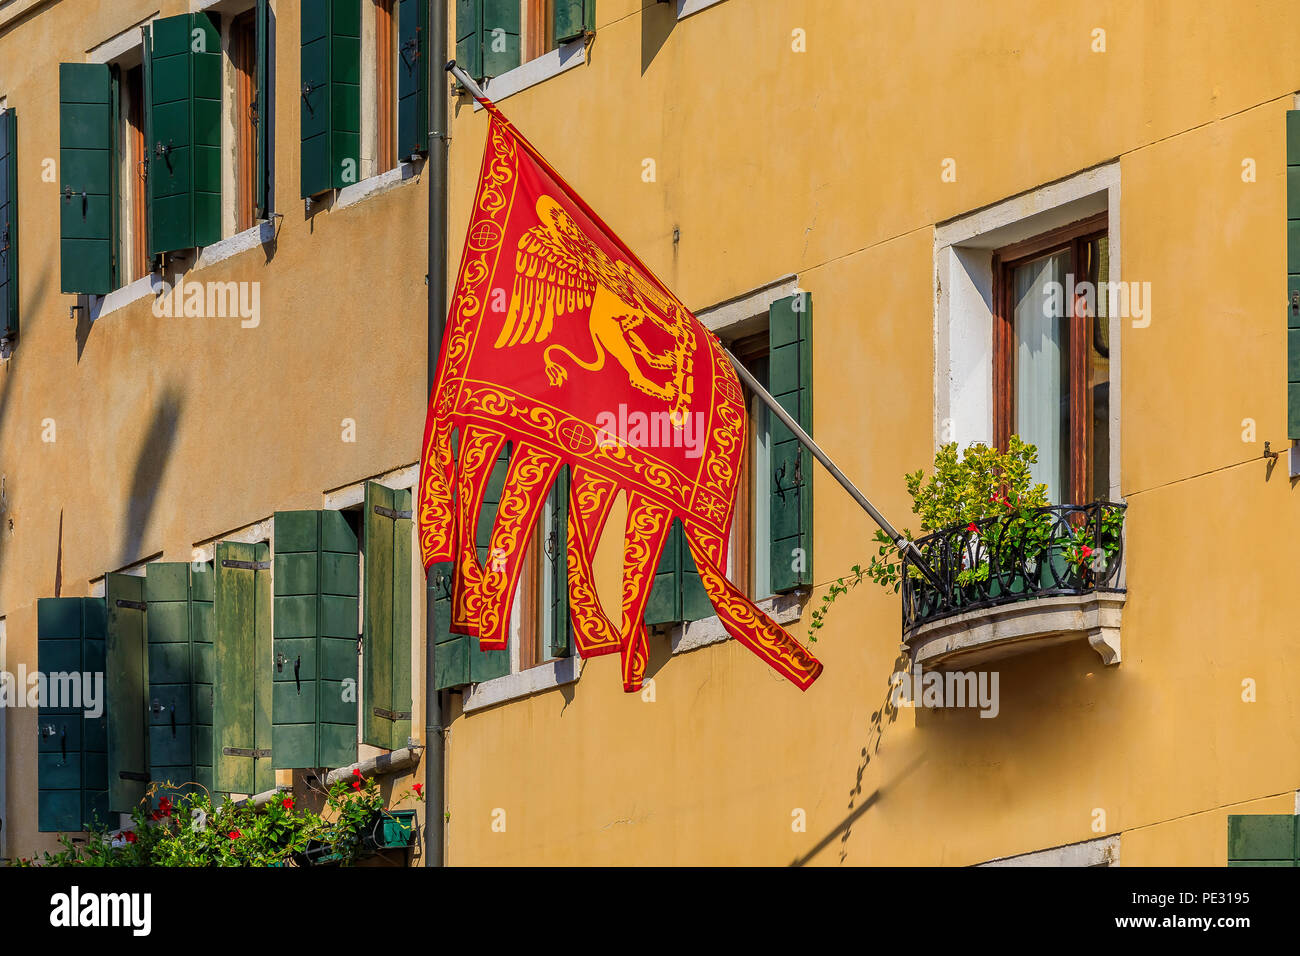 Bandera tradicional Veneciano con el León de San Marcos en la fachada de un edificio en la ciudad de Venecia, Italia Foto de stock